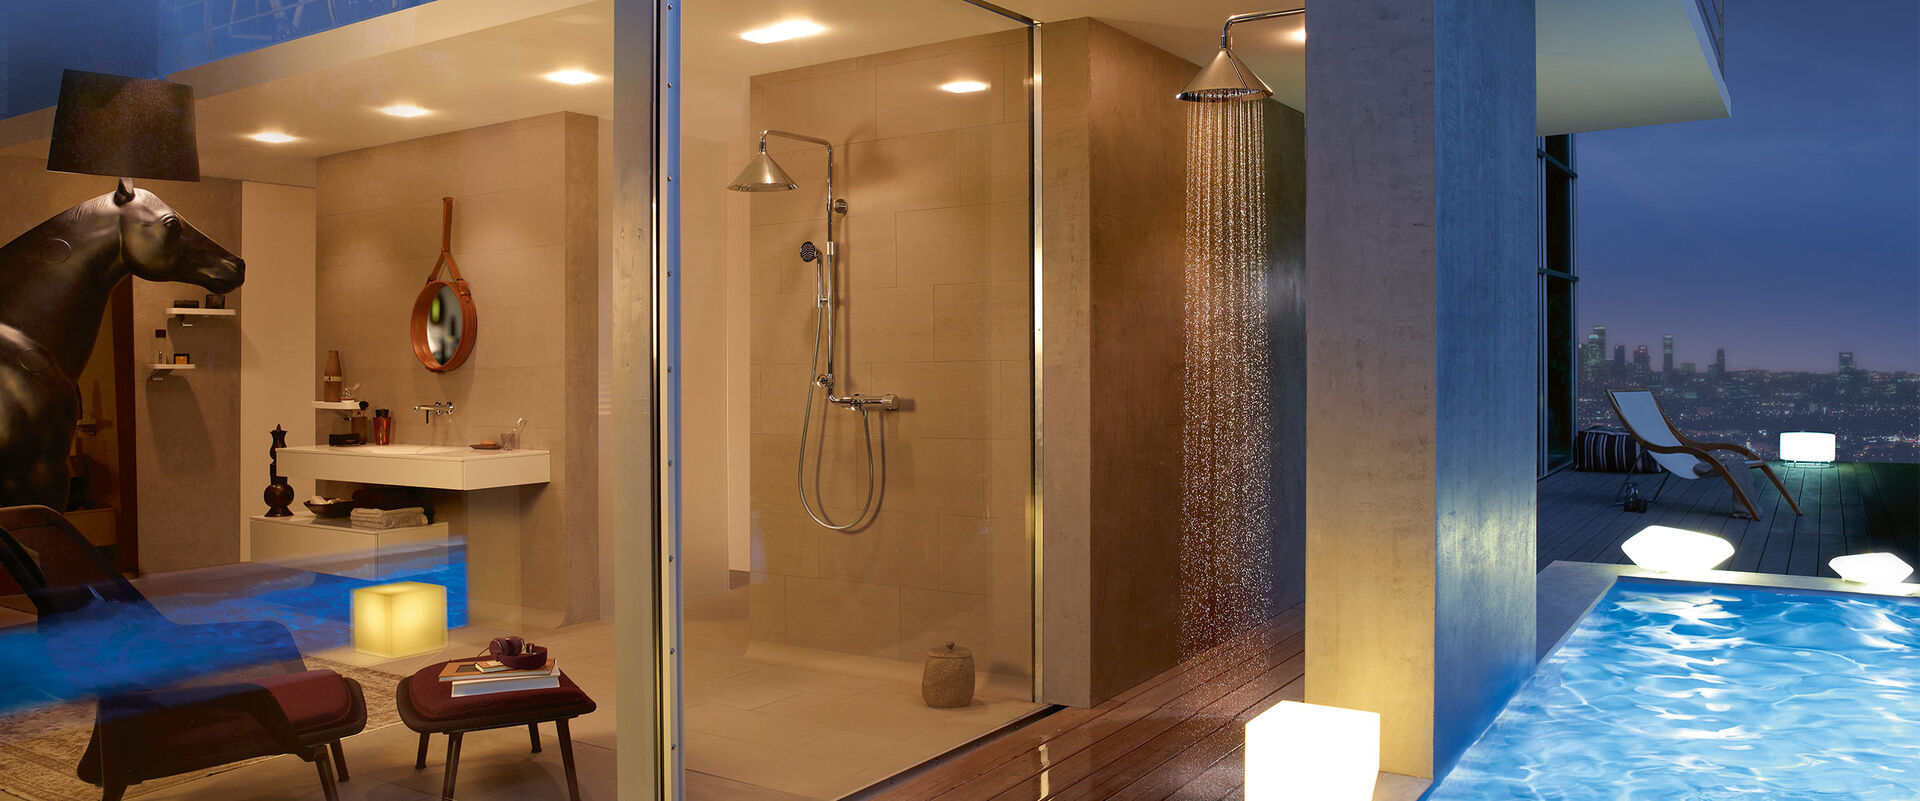 Penthouse-Wohnung mit Swimmingpool und Außendusche von AXOR ShowerProducts by Front auf dem Dach. Direkt daneben der Blick ins Badezimmer mit Dusche, ebenfalls von AXOR Showerproducts by Front. Im Badezimmer befindet sich außerdem eine Sitzgelegenheit, Waschbecken mit Spiegel und Dekoobjekte.